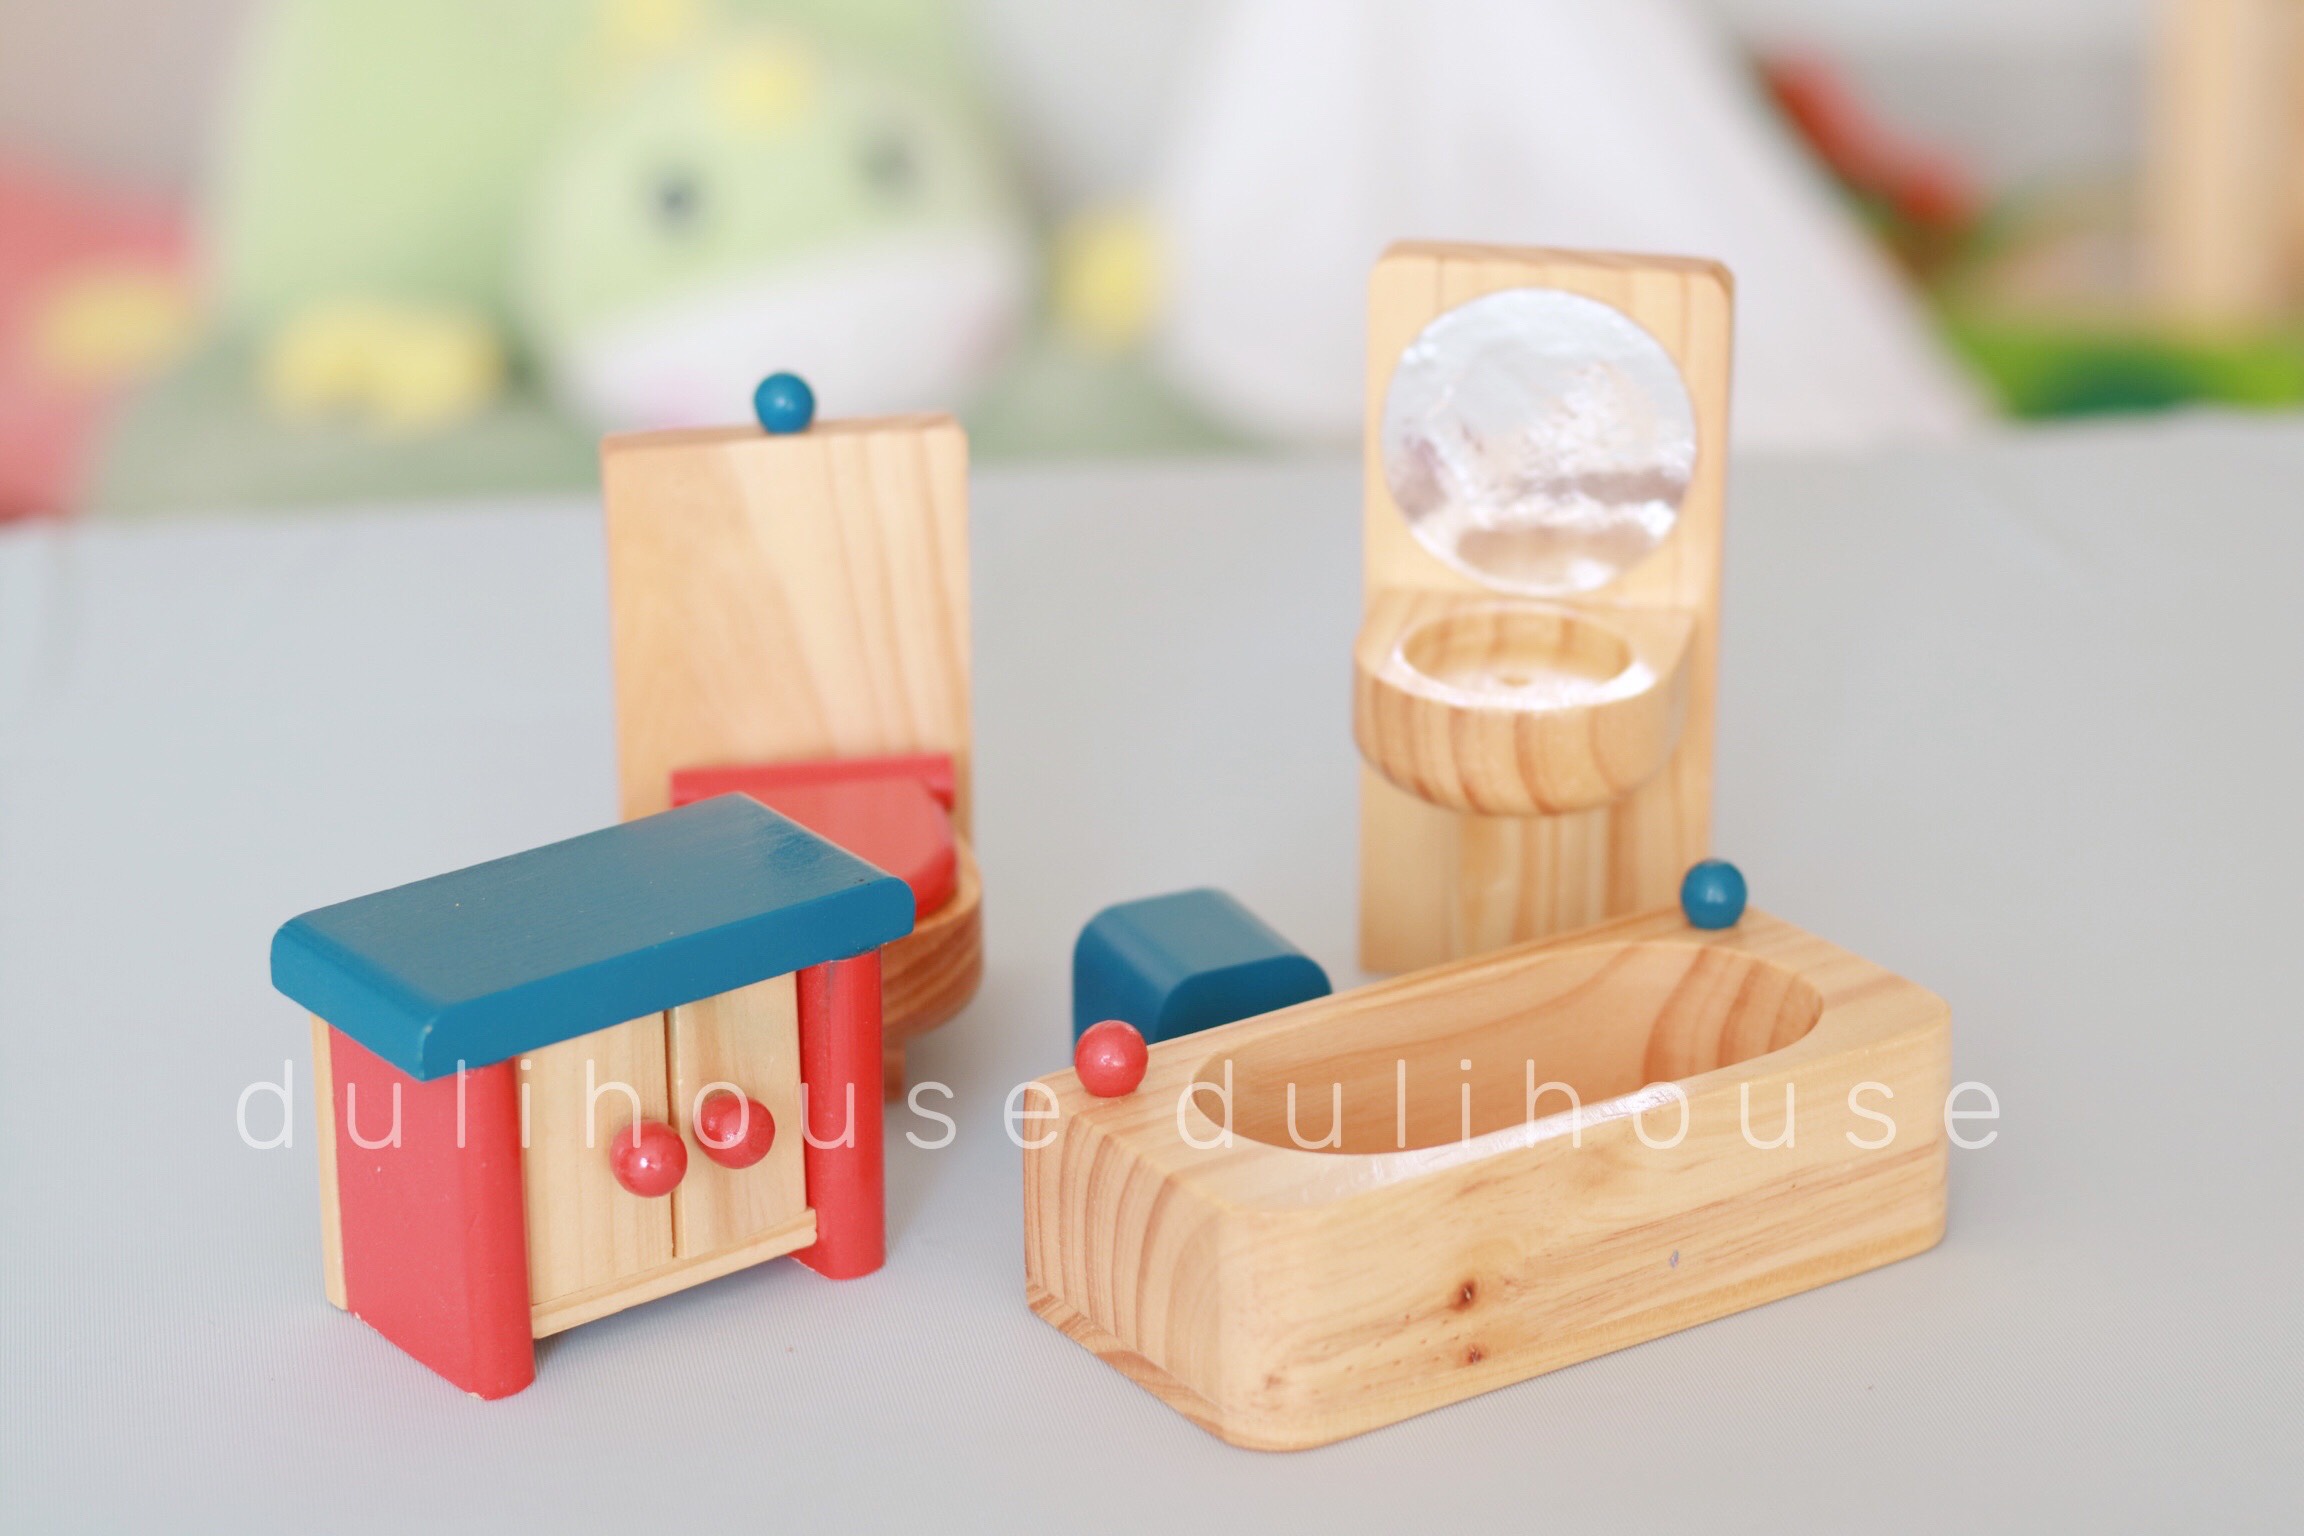 [TỪ 1 TUỔI] Bộ dụng cụ đồ chơi Gỗ - Phòng tắm cho bé  - Phát triển tư duy sáng tạo và nhận biết hình khối, đồ dùng sinh hoạt gia đình - Sản xuất tại Việt Nam